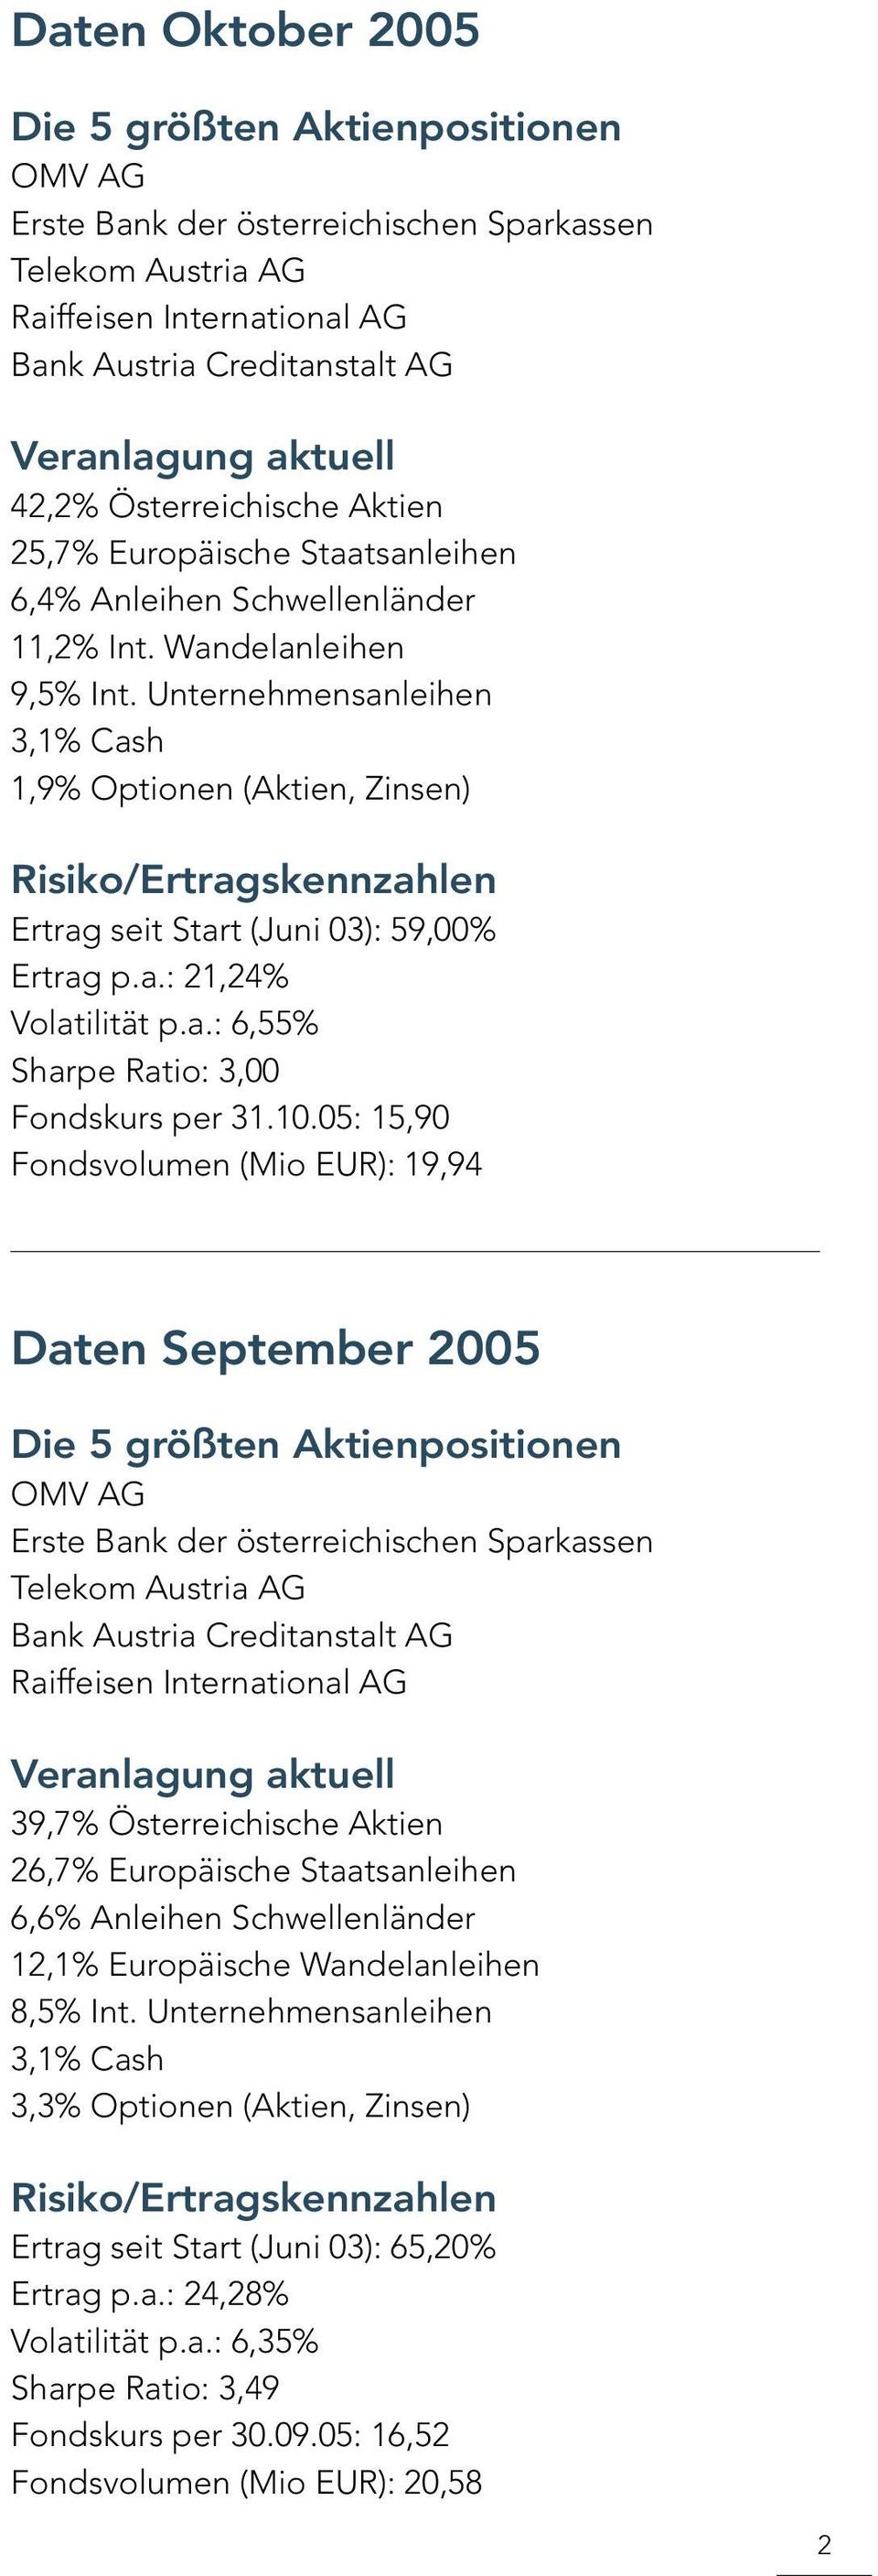 05: 15,90 Fondsvolumen (Mio EUR): 19,94 Daten September 2005 39,7% Österreichische Aktien 26,7% Europäische Staatsanleihen 6,6% Anleihen Schwellenländer 12,1% Europäische Wandelanleihen